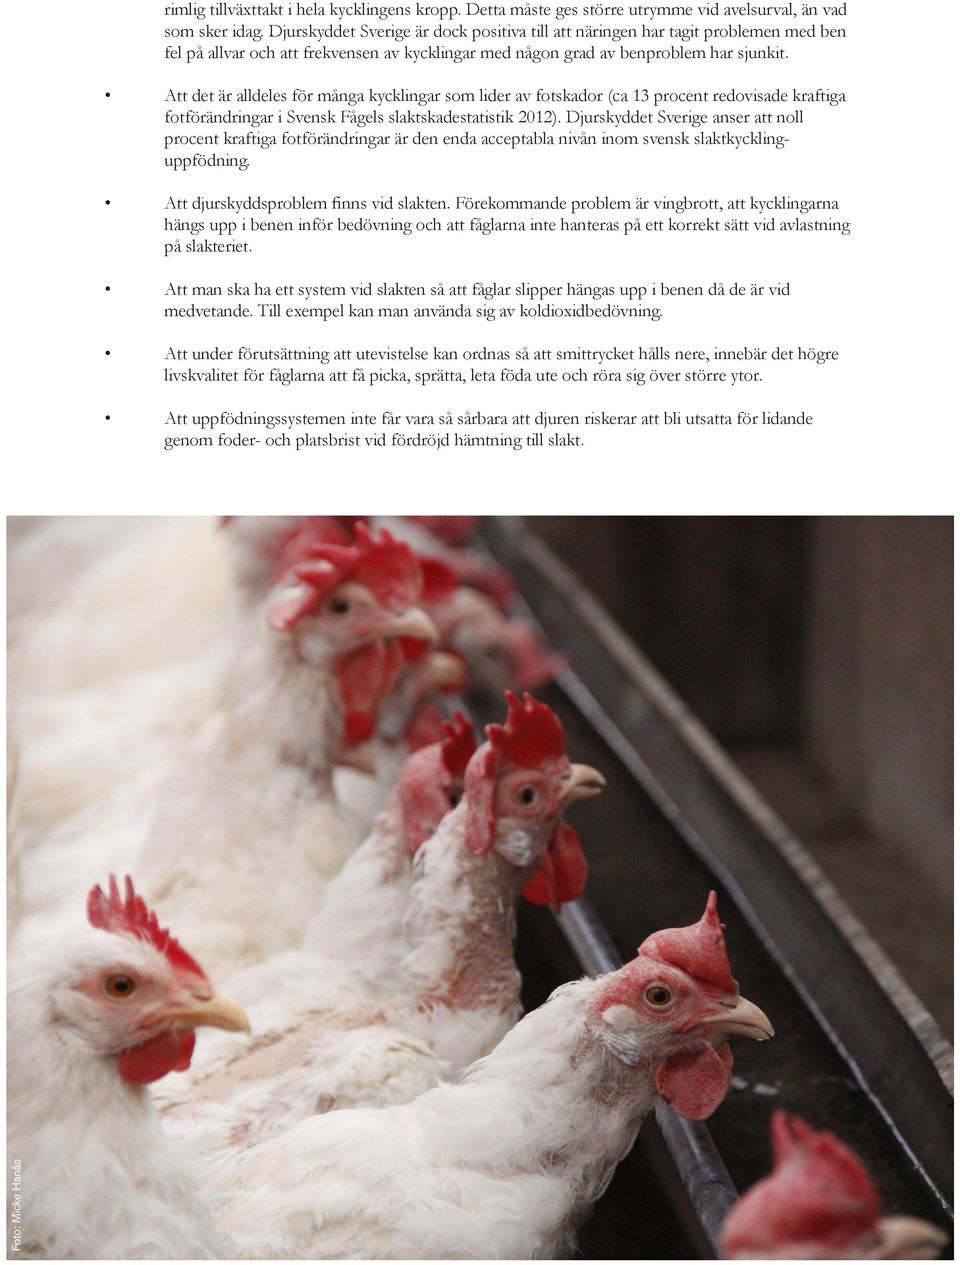 Att det är alldeles för många kycklingar som lider av fotskador (ca 13 procent redovisade kraftiga fotförändringar i Svensk Fågels slaktskadestatistik 2012).